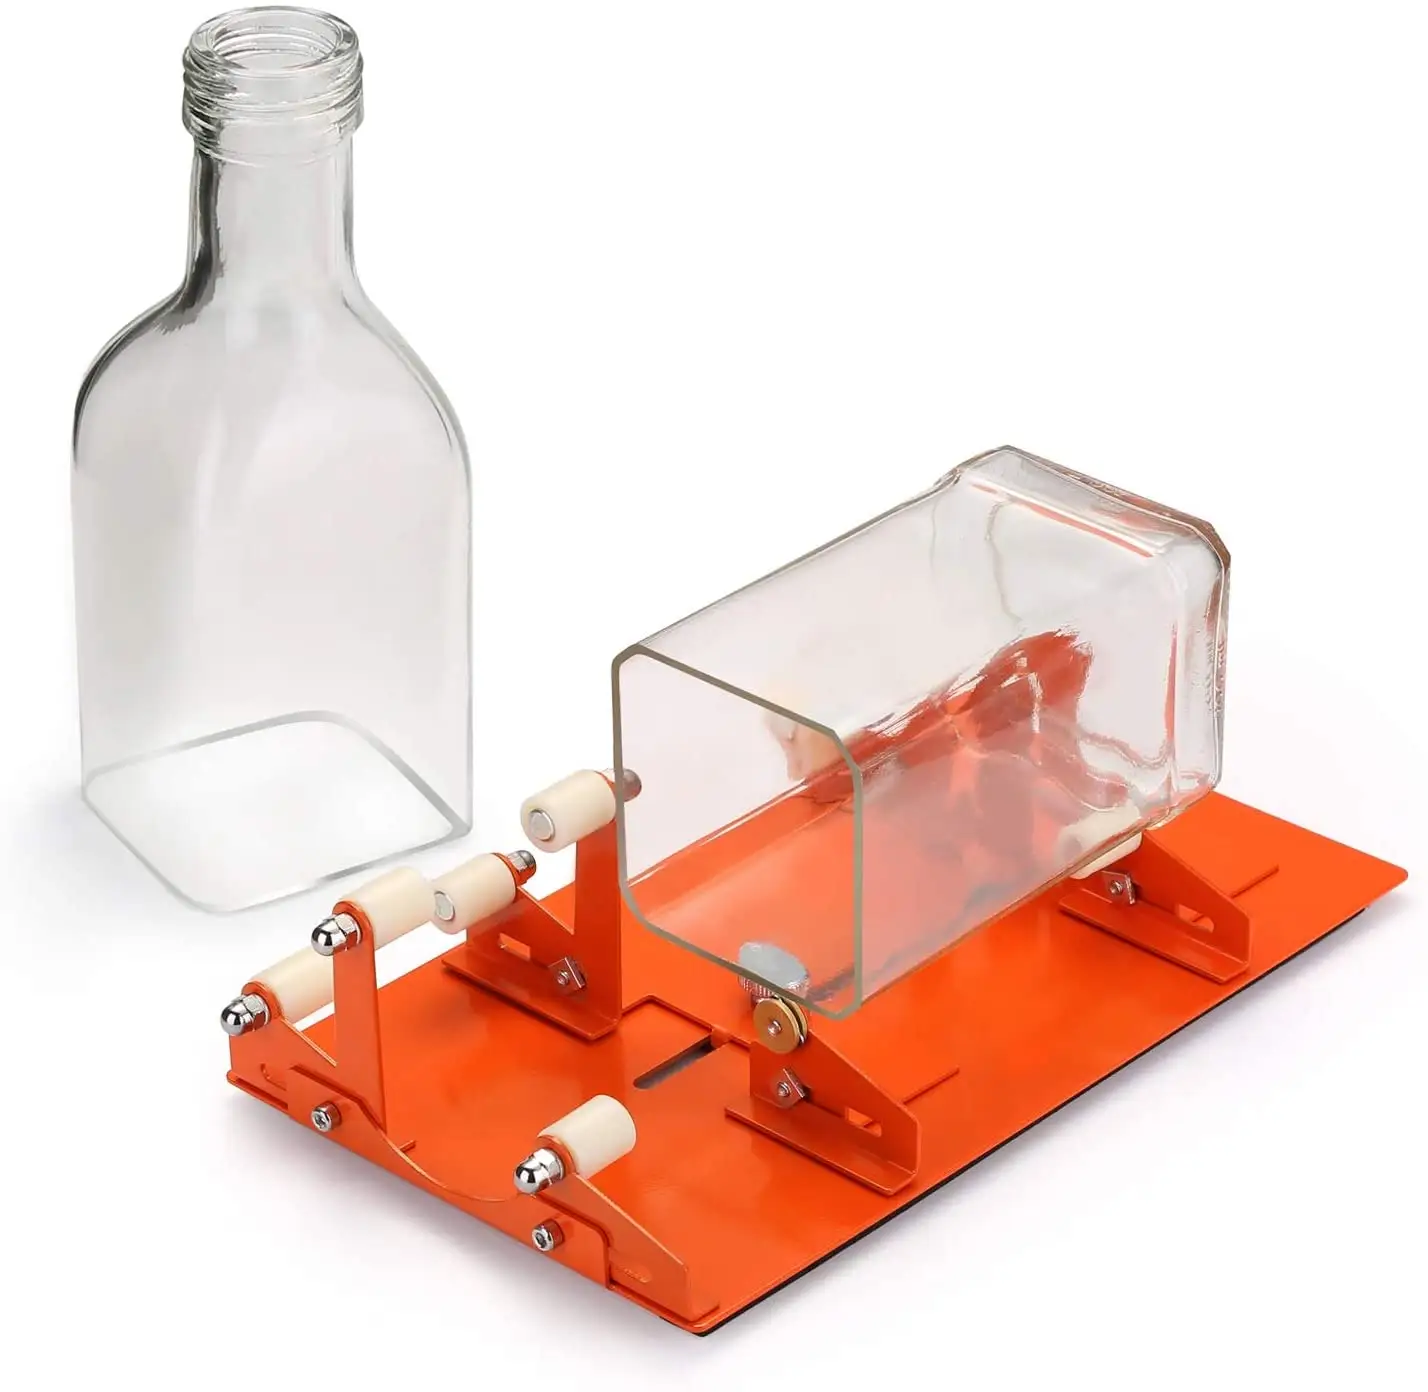 Profi Flaschenschneider Glas Glasflaschenschneider Glass Bottle Cutter machine 